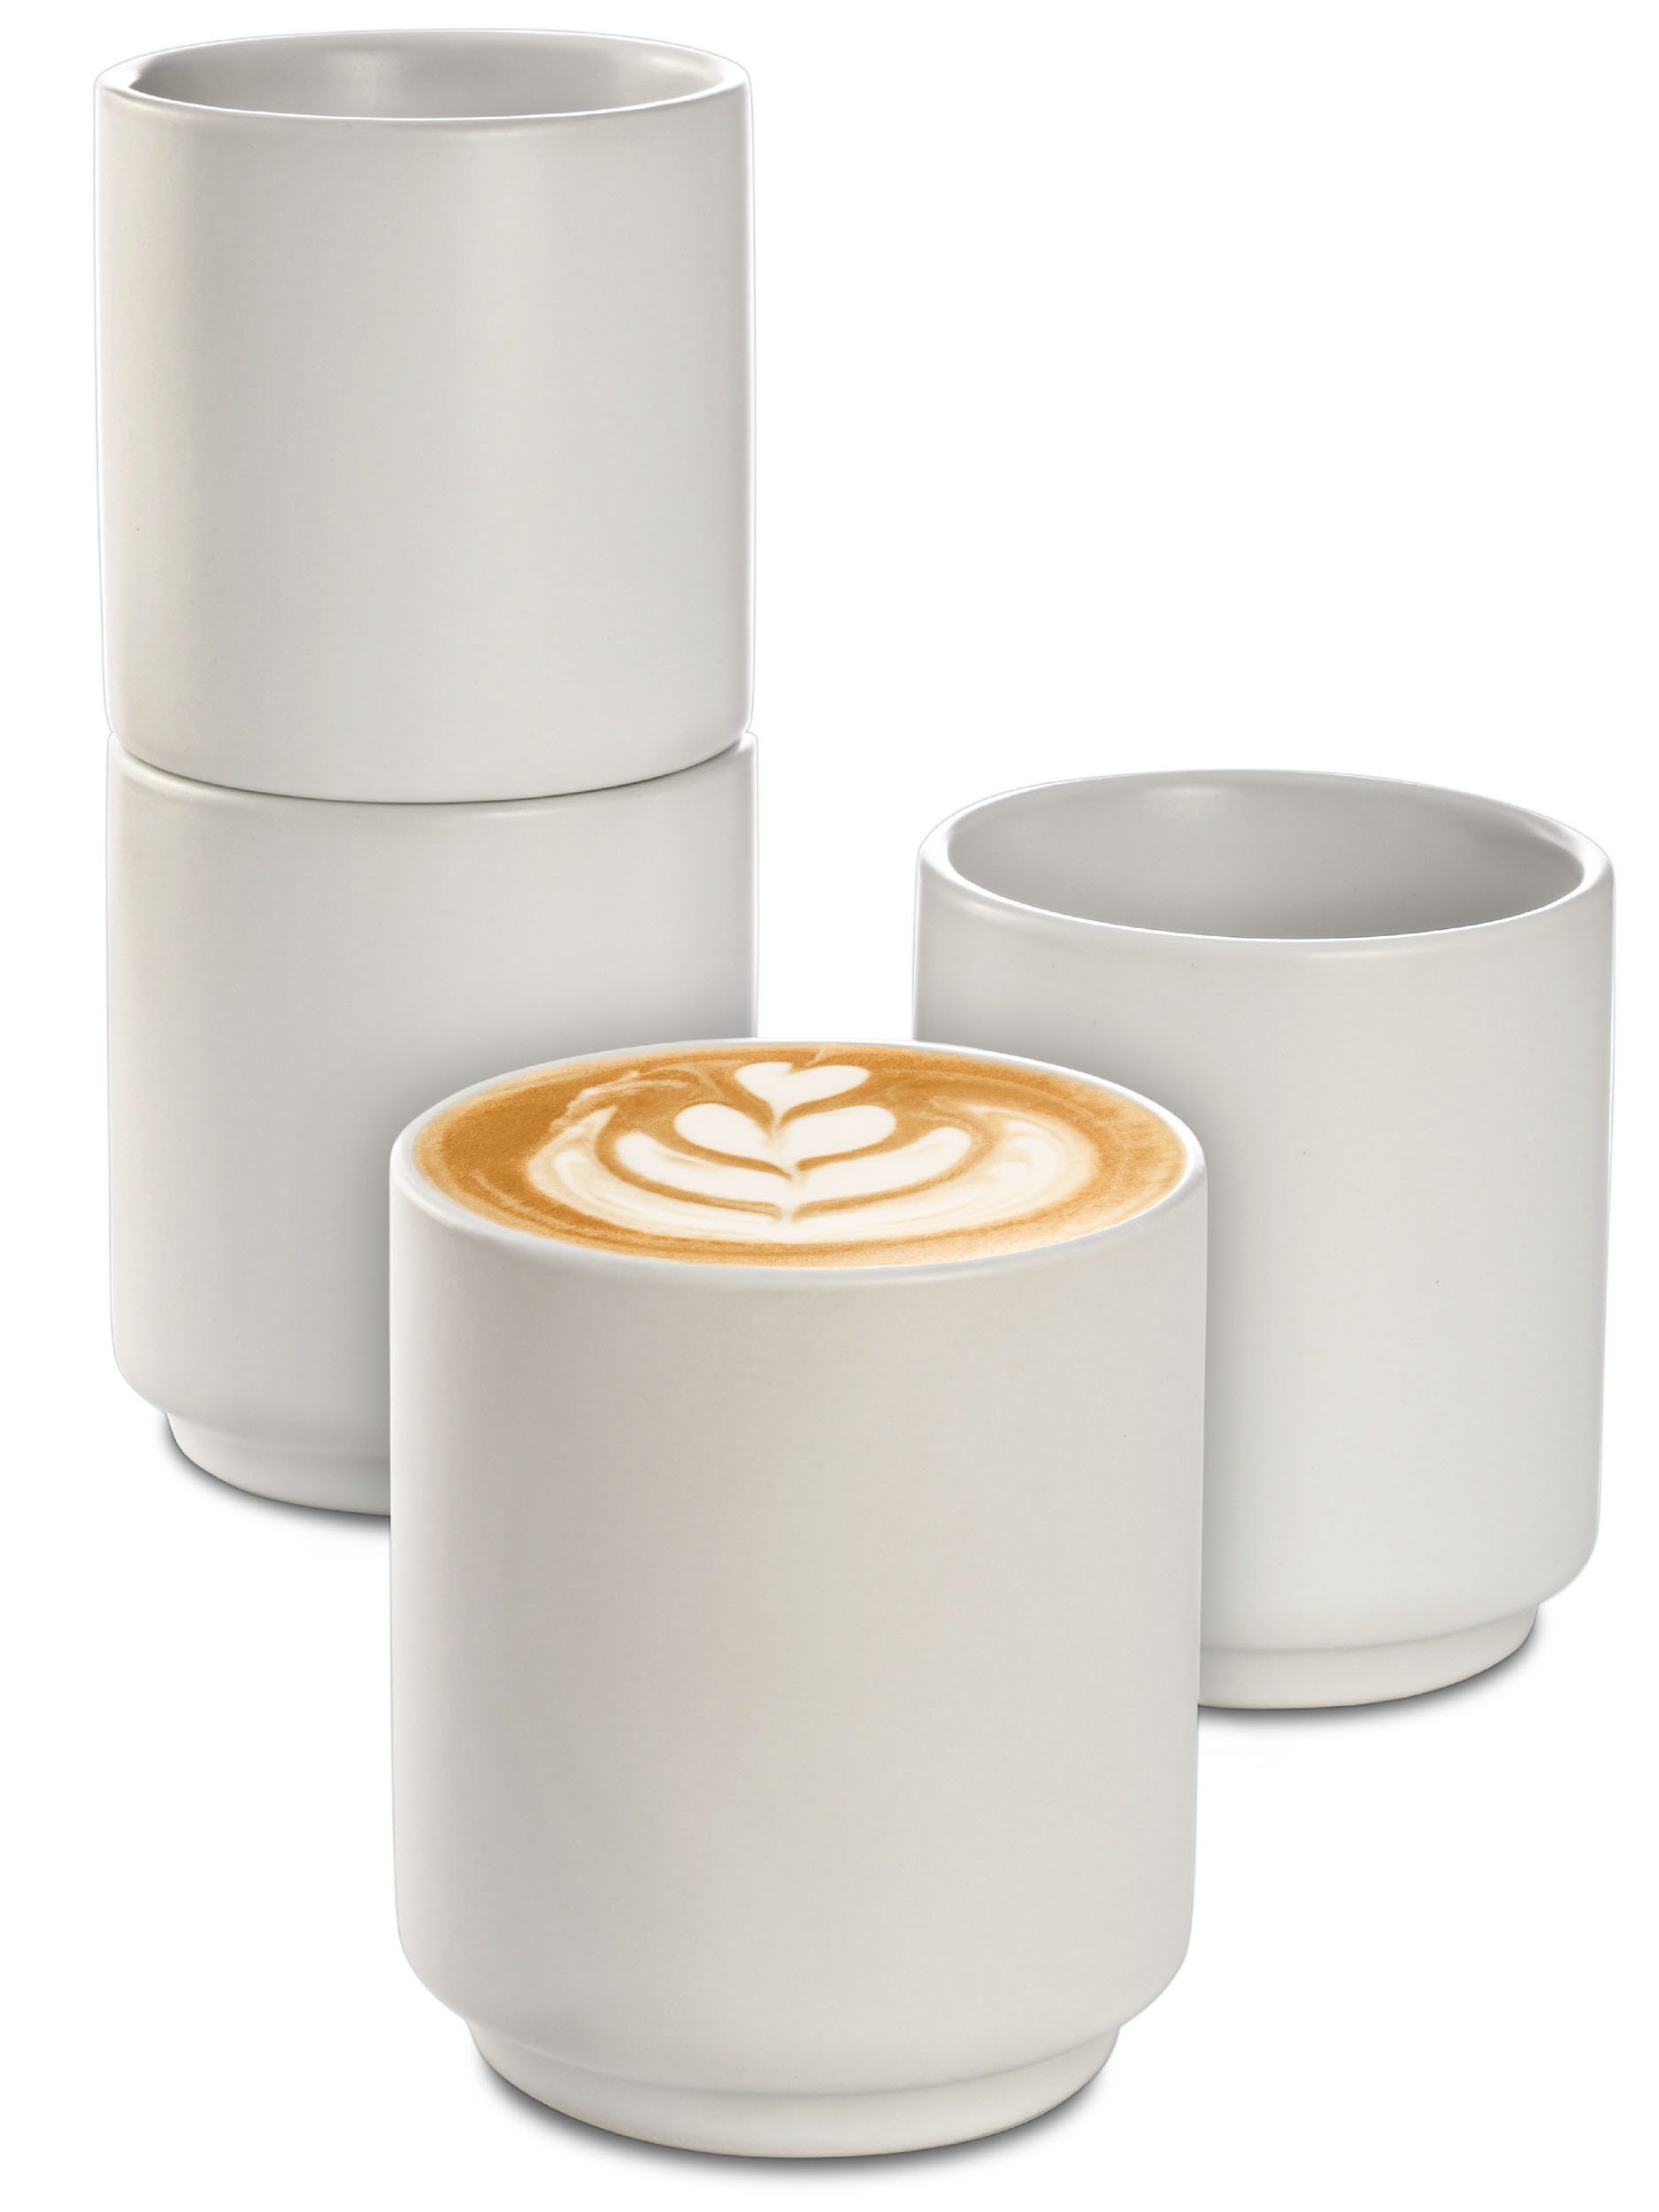 ohne Groß ml 200 Entworfen Cosumy Hitzebeständiges Keramik, Cappuccinotasse Keramik Weiß Henkel, für Art - Matt 200 Tassen - Kaffee Cappuccino Design Stapelbares Set Latte ml 4er